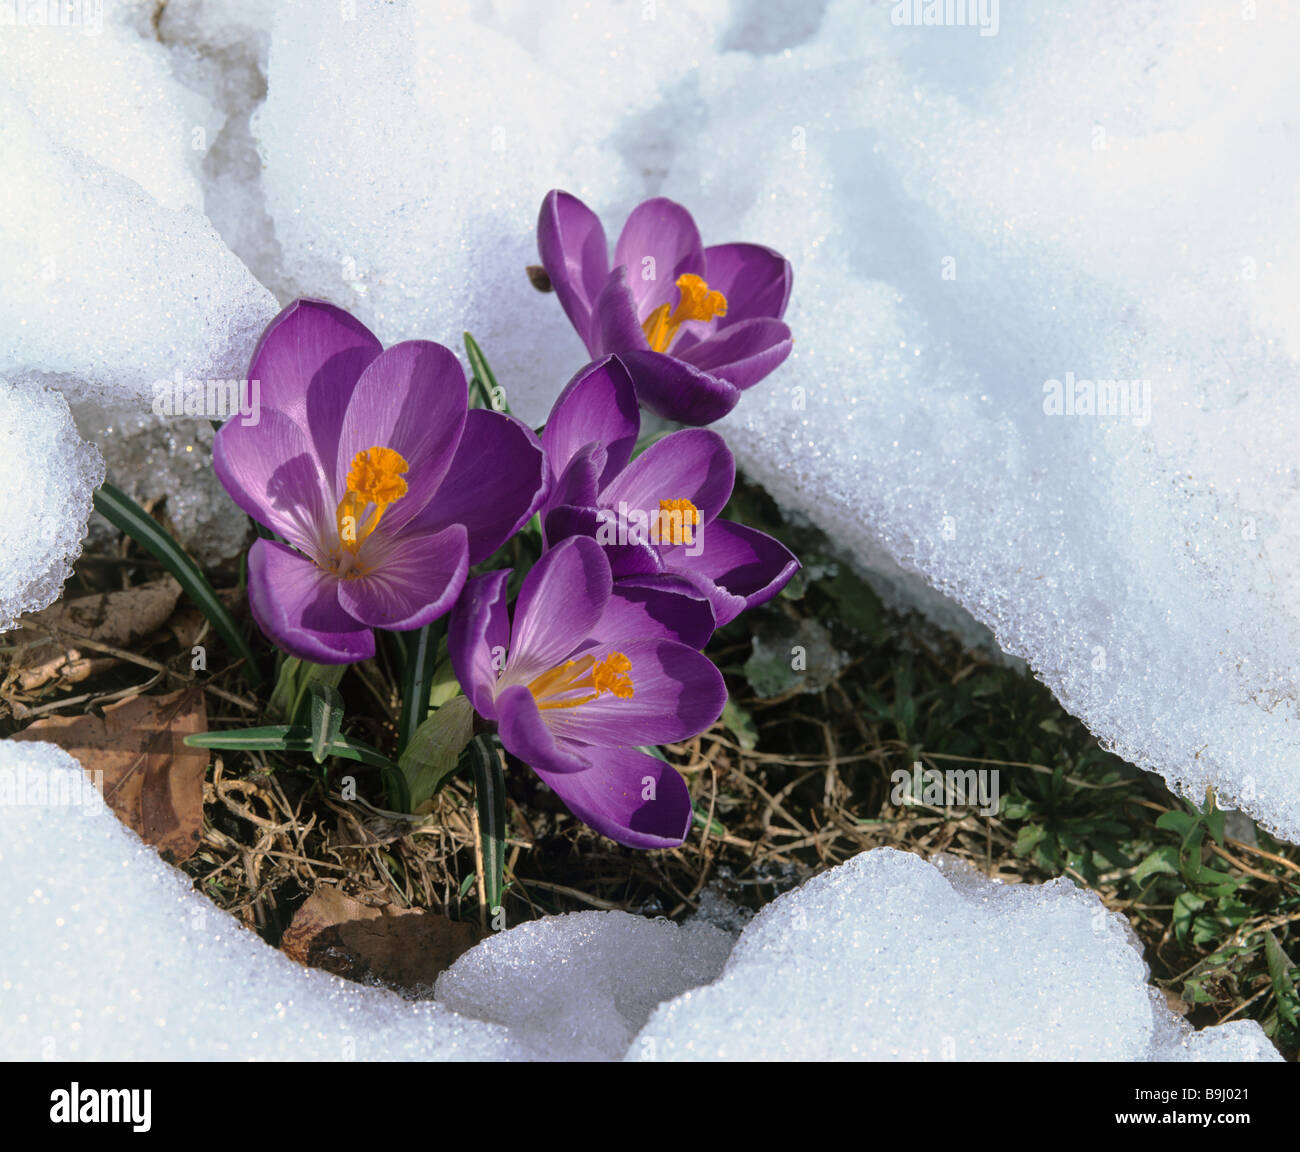 Blühende Krokusse (Crocus), Frühling, Schnee schmelzen Stockfoto